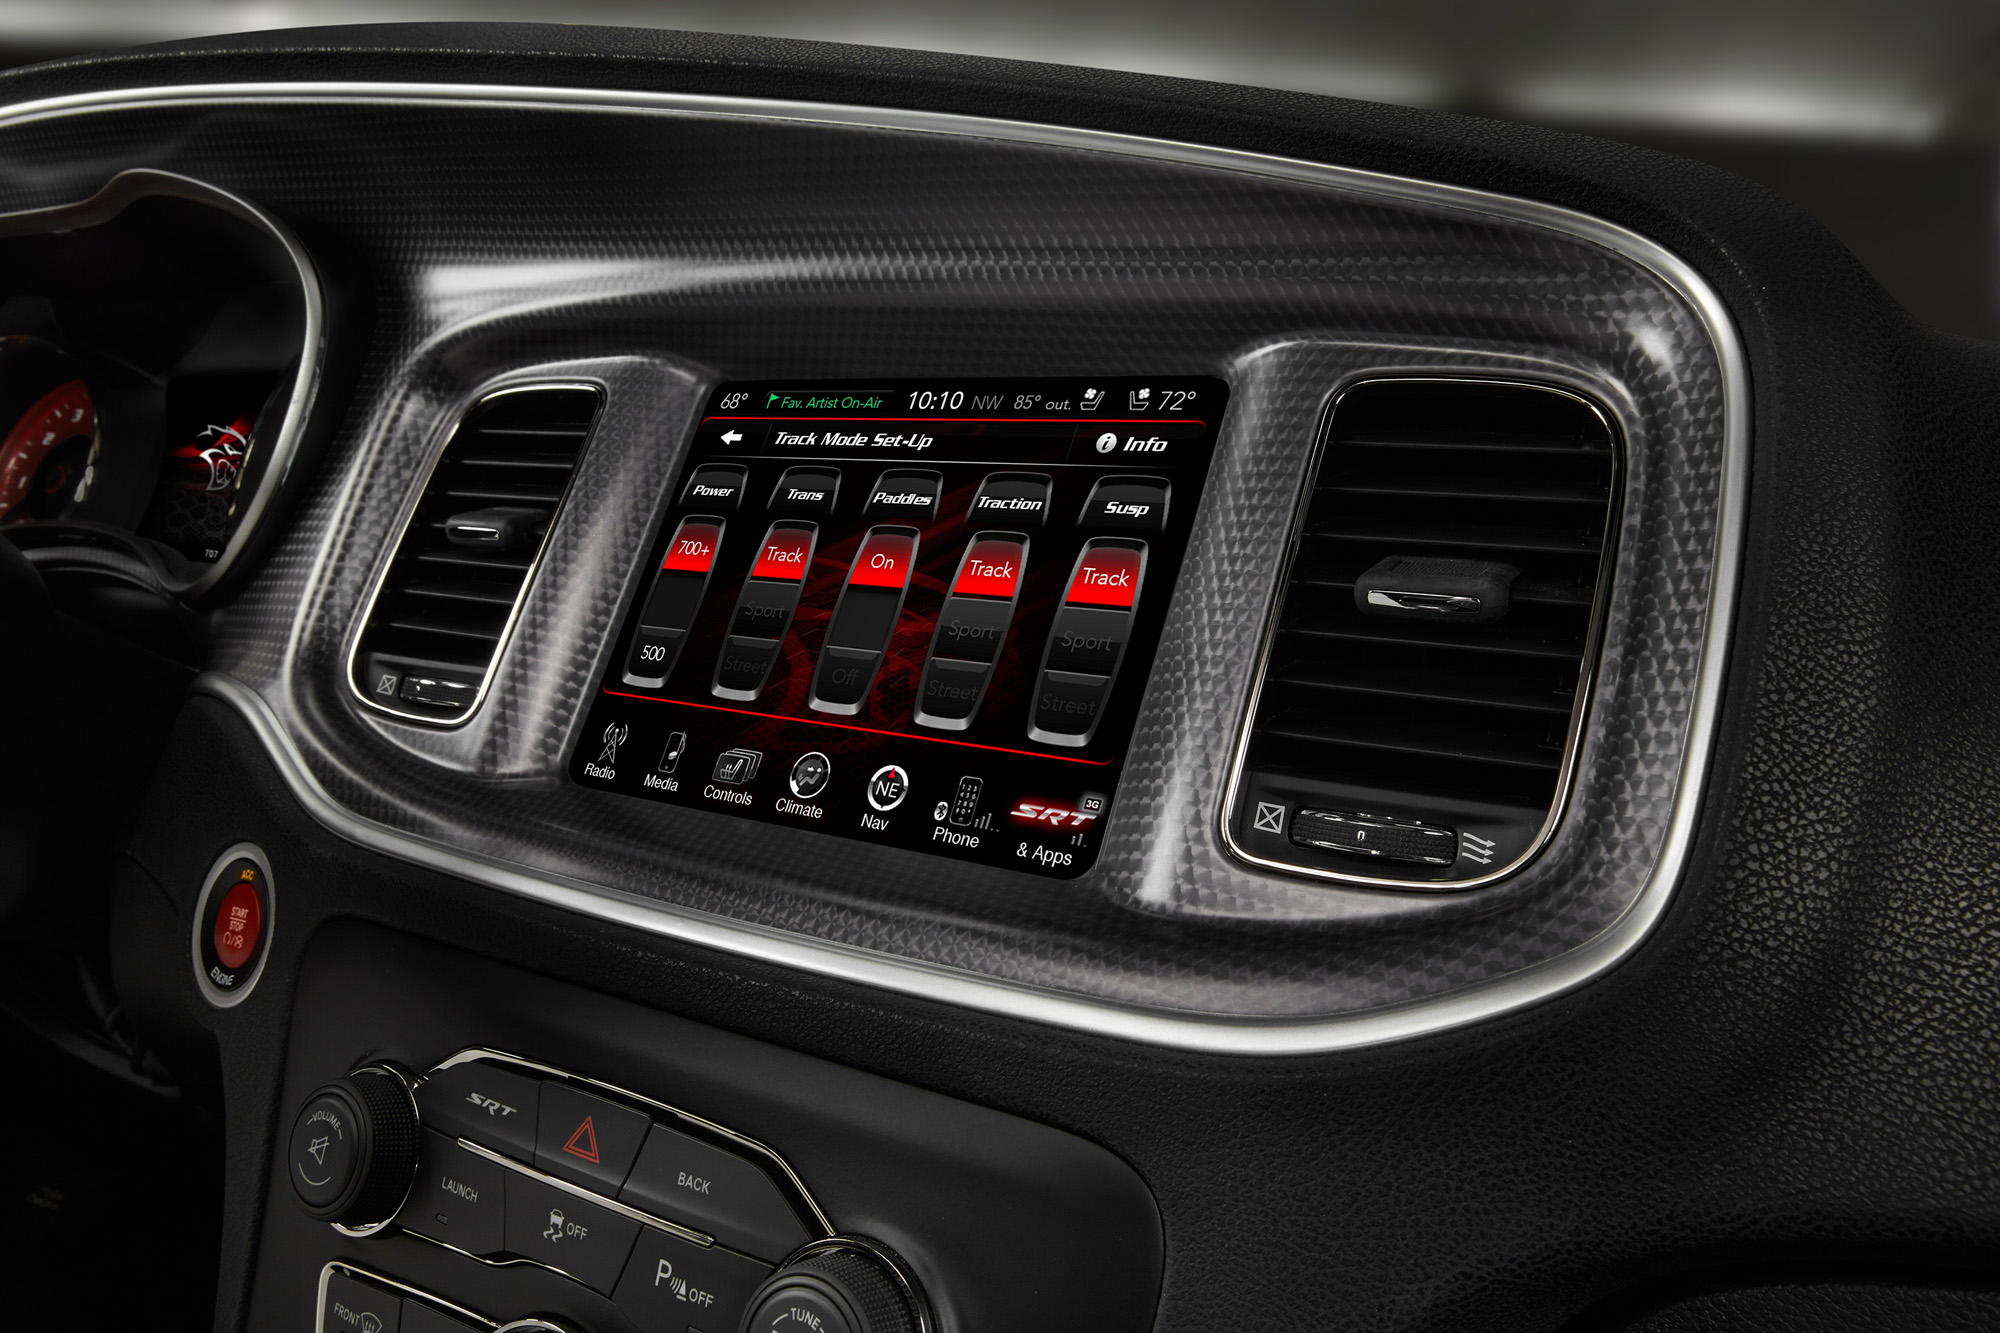 2015 Dodge Charger SRT - Track Setup Toggles screen